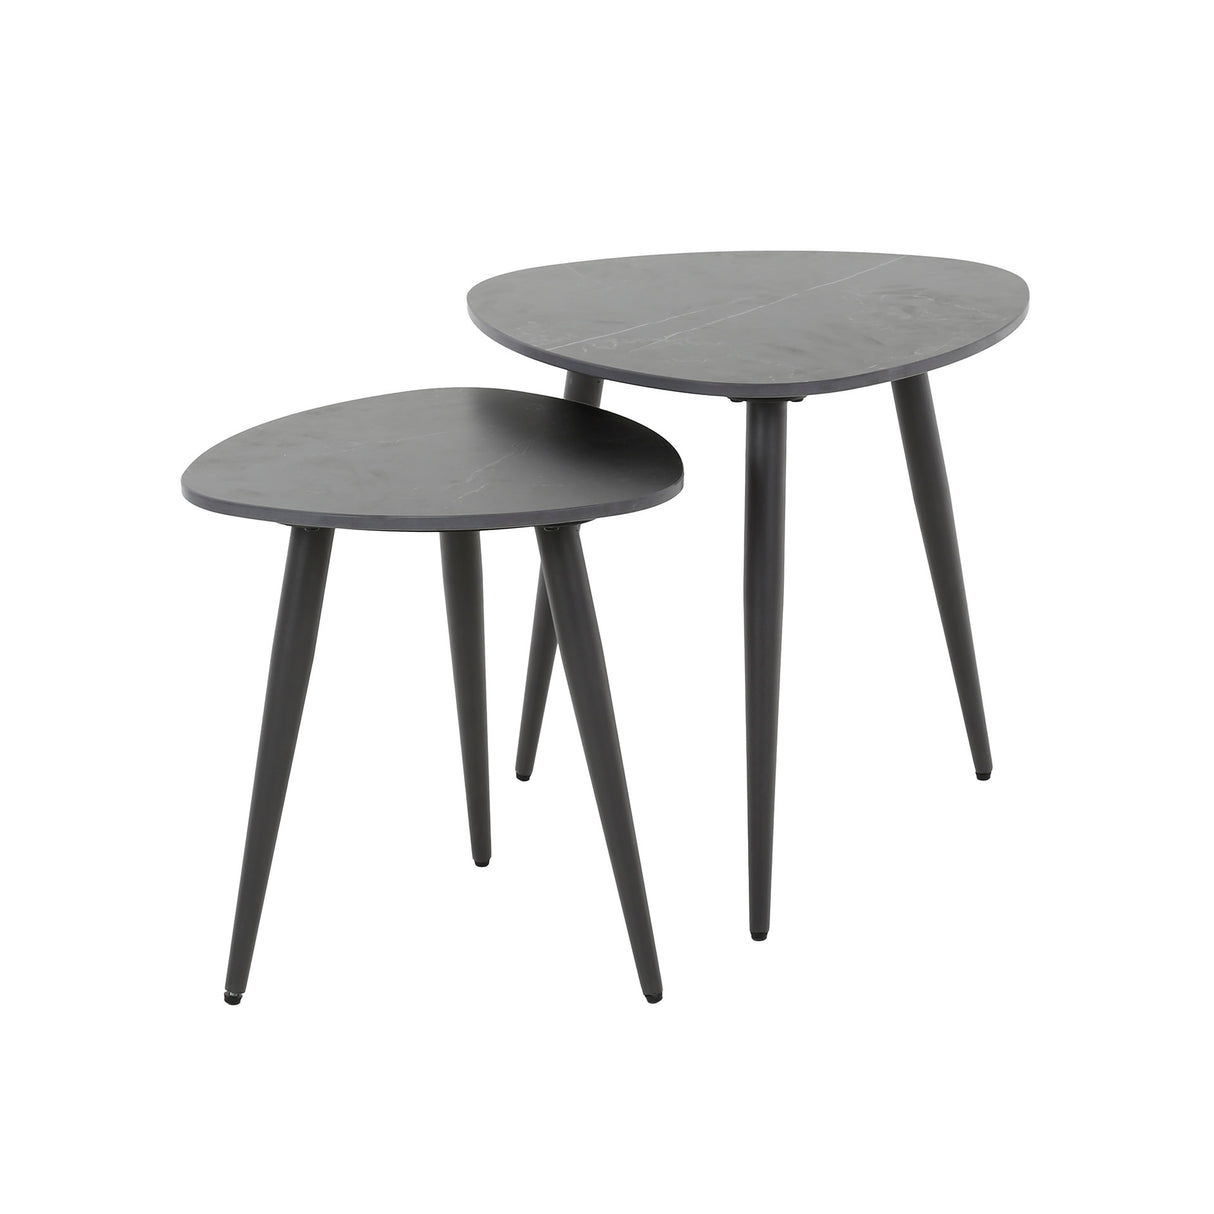 Set of 2 side tables Sophie triangular ceramic black